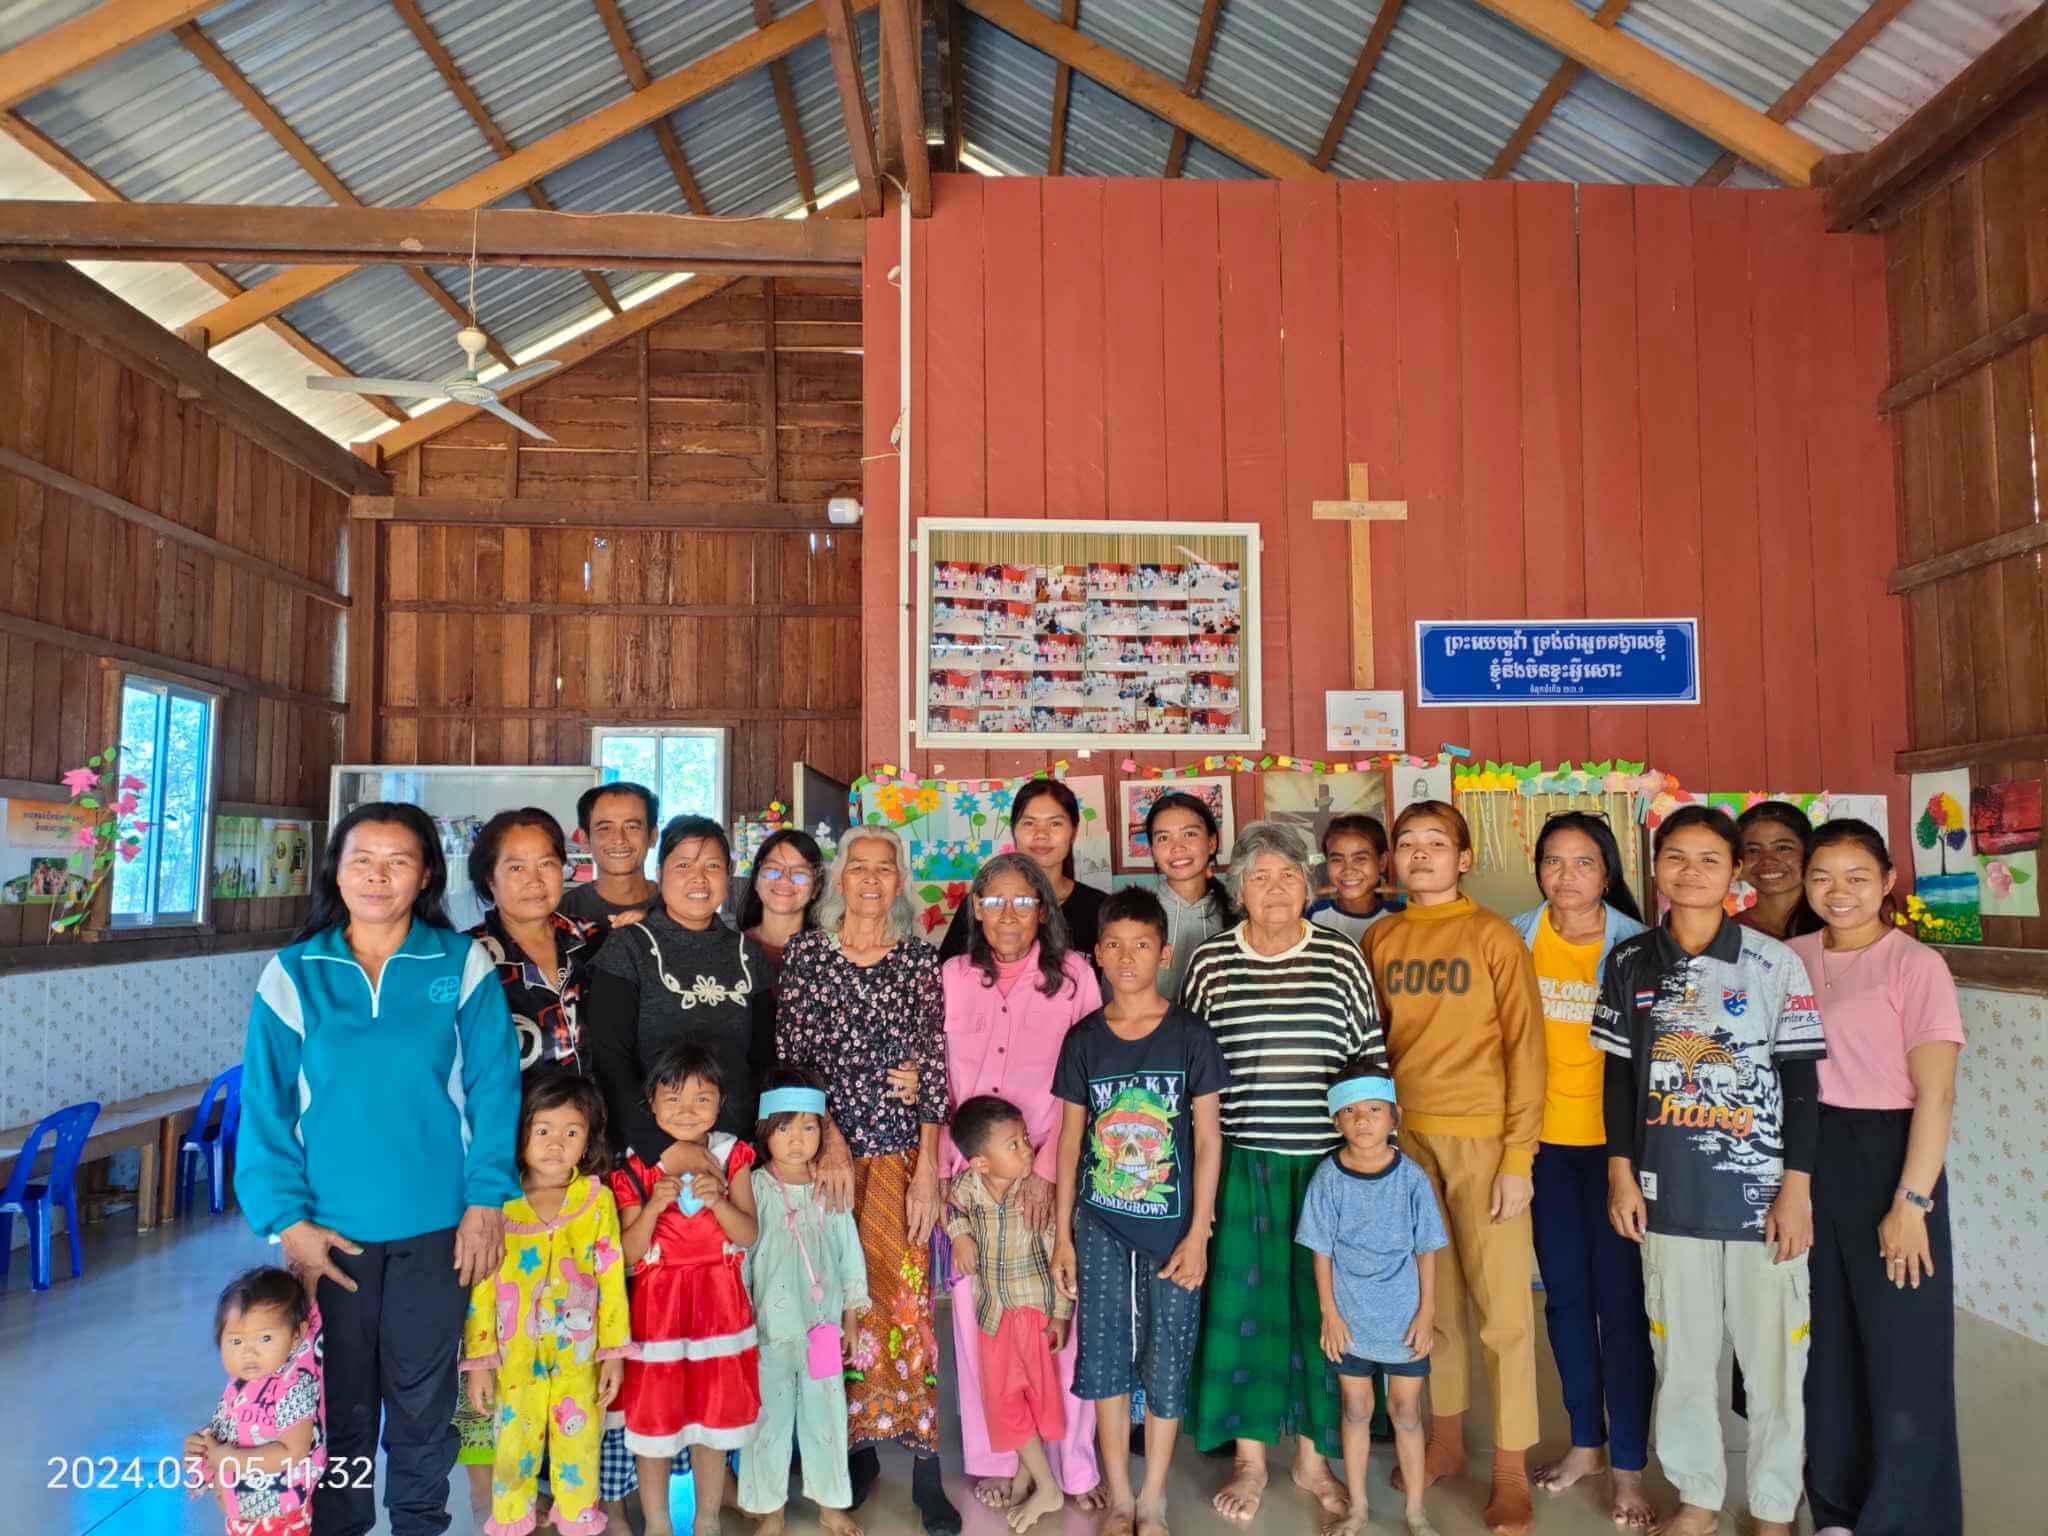 Chhaep village church group